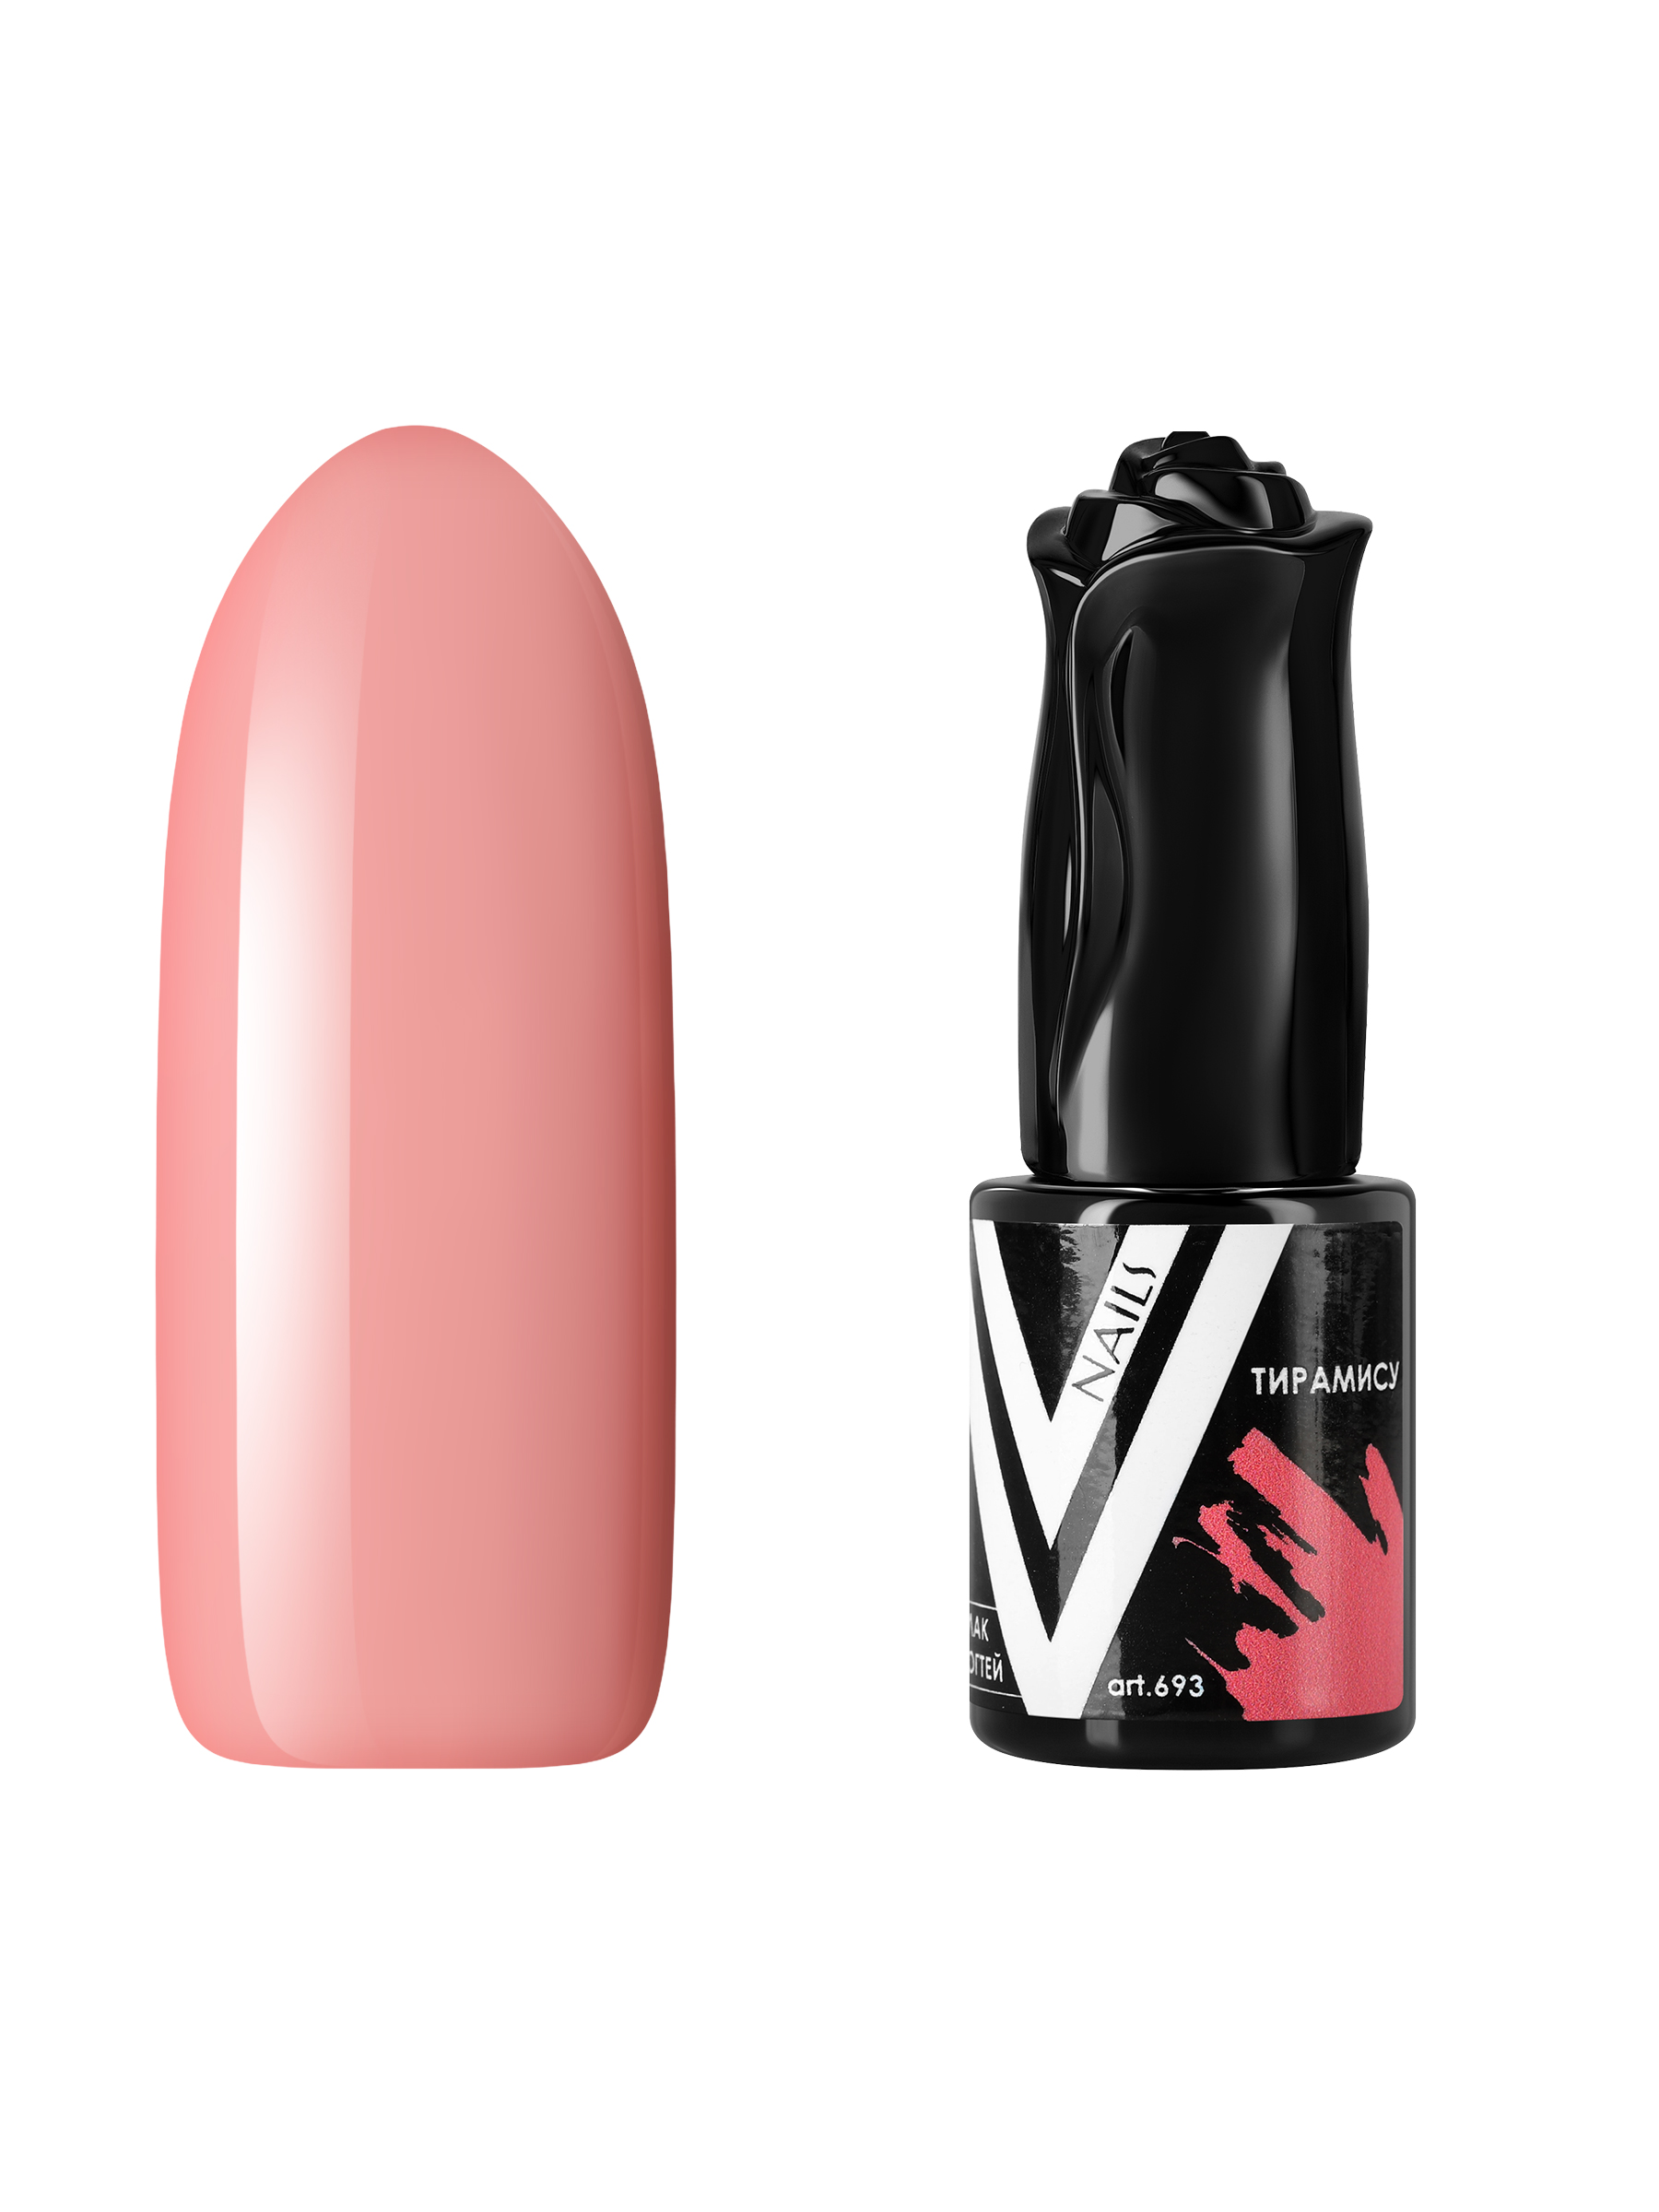 Гель-лак для ногтей Vogue Nails плотный самовыравнивающийся, светлый, персиковый, 10 мл кофейник ностальгия 12х16см 0 7л тирамису